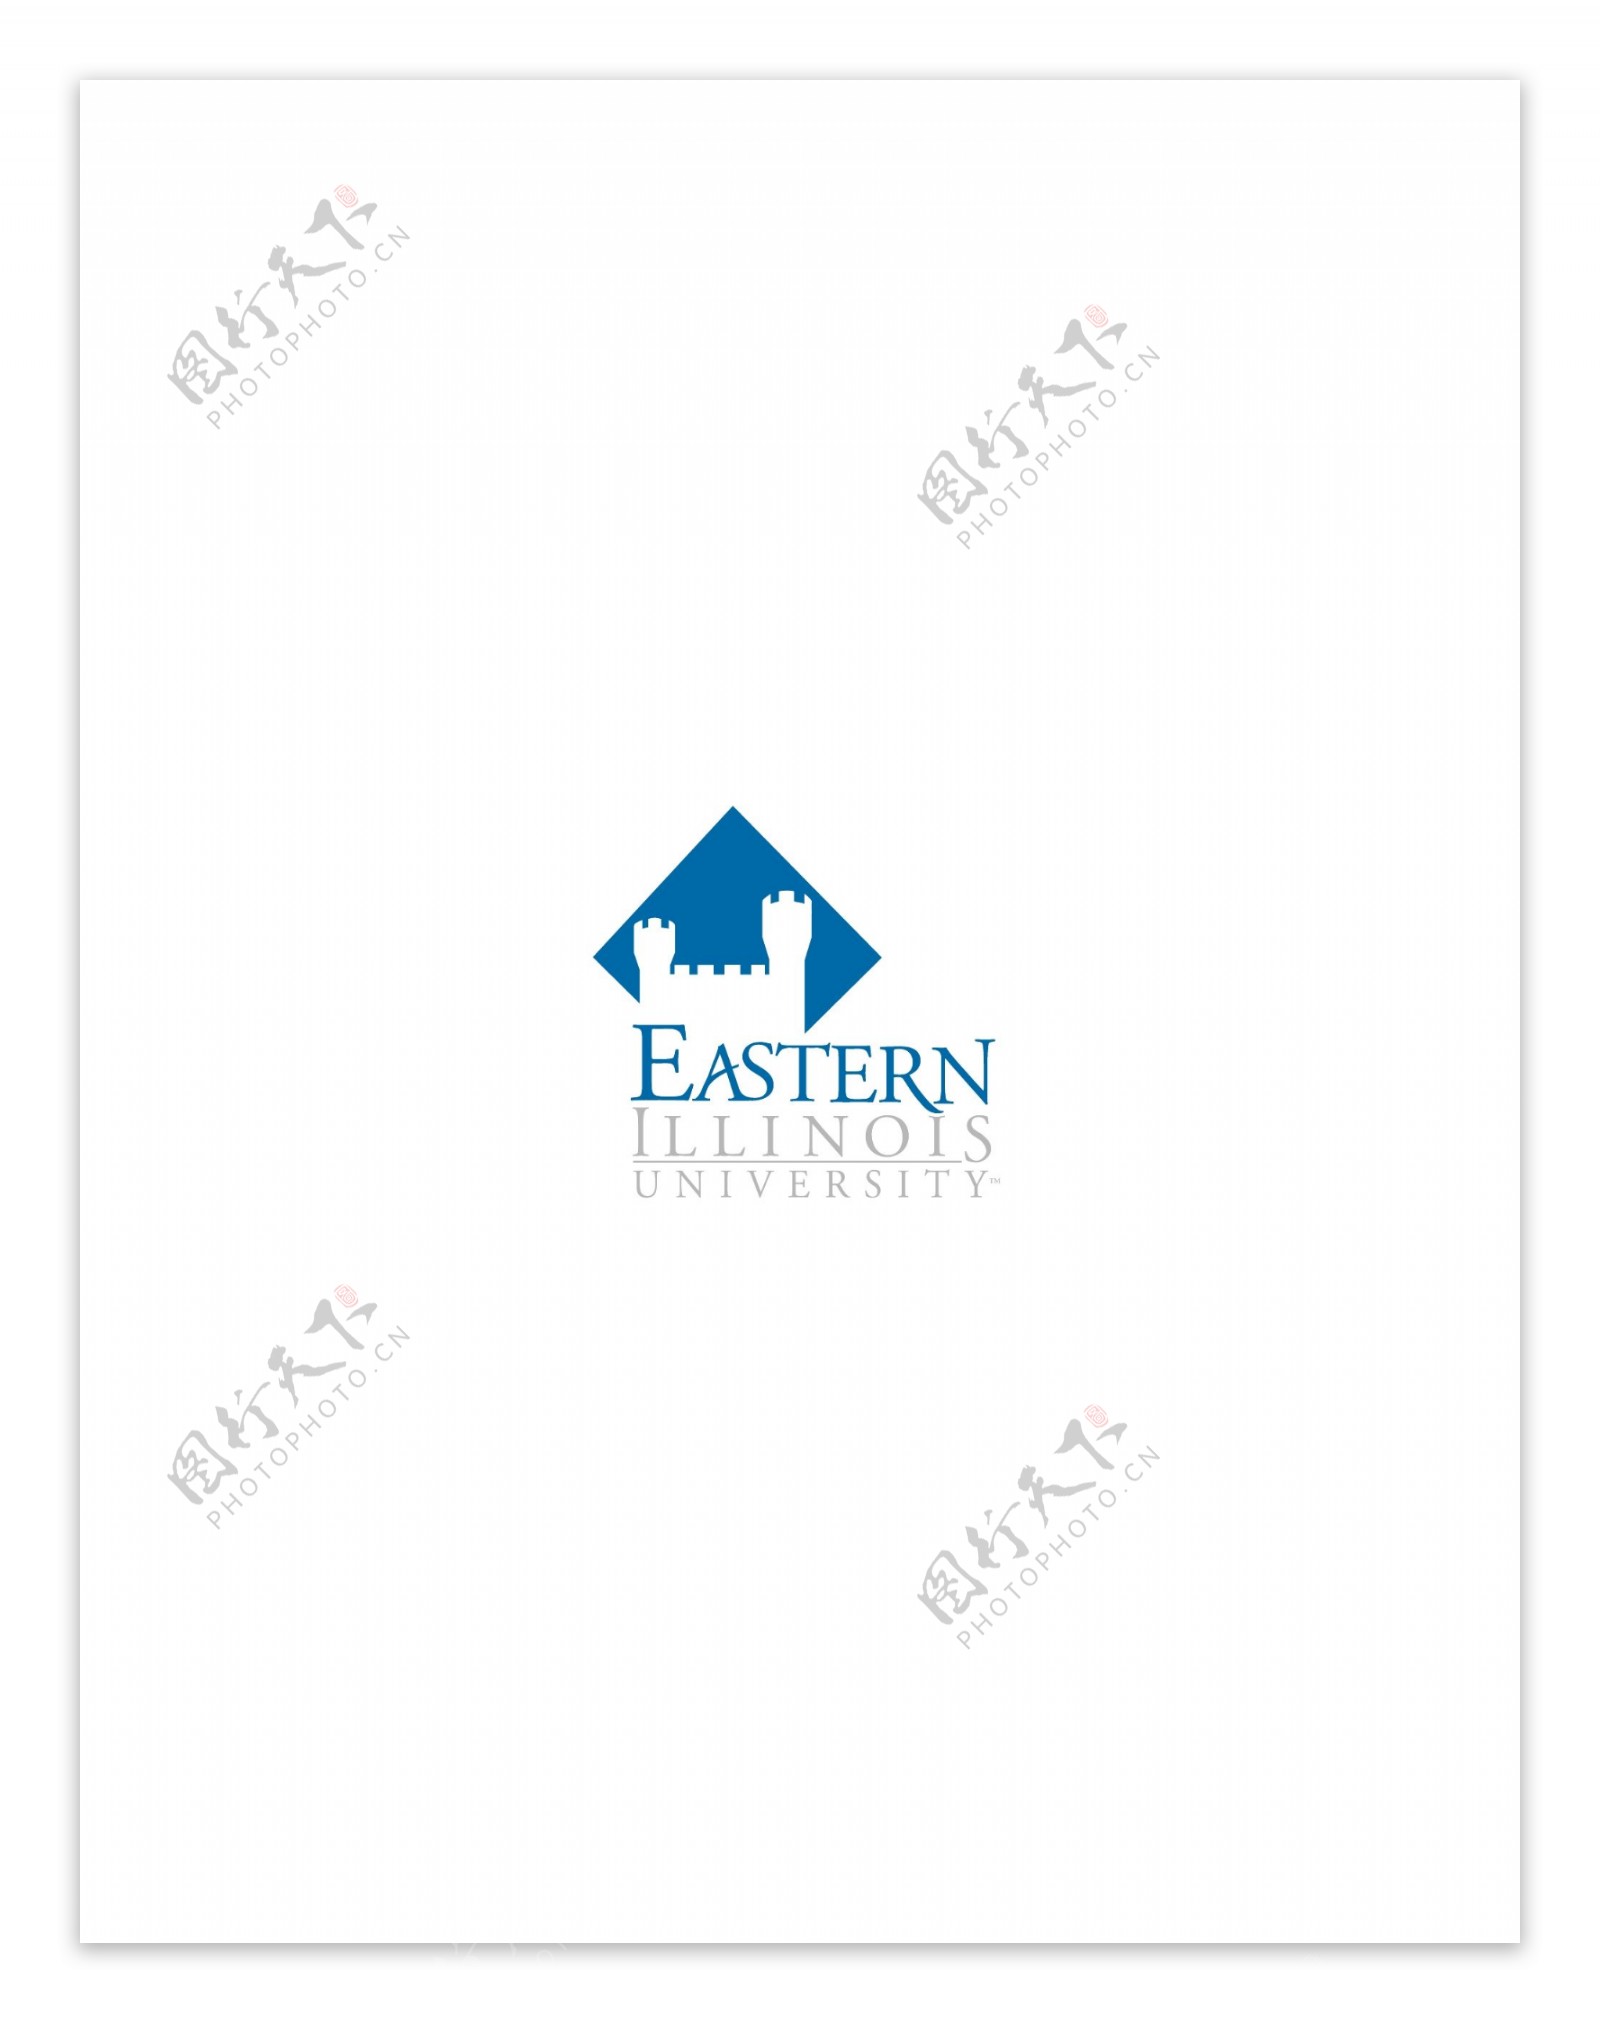 EasternIllinoisUniversitylogo设计欣赏EasternIllinoisUniversity教育机构标志下载标志设计欣赏